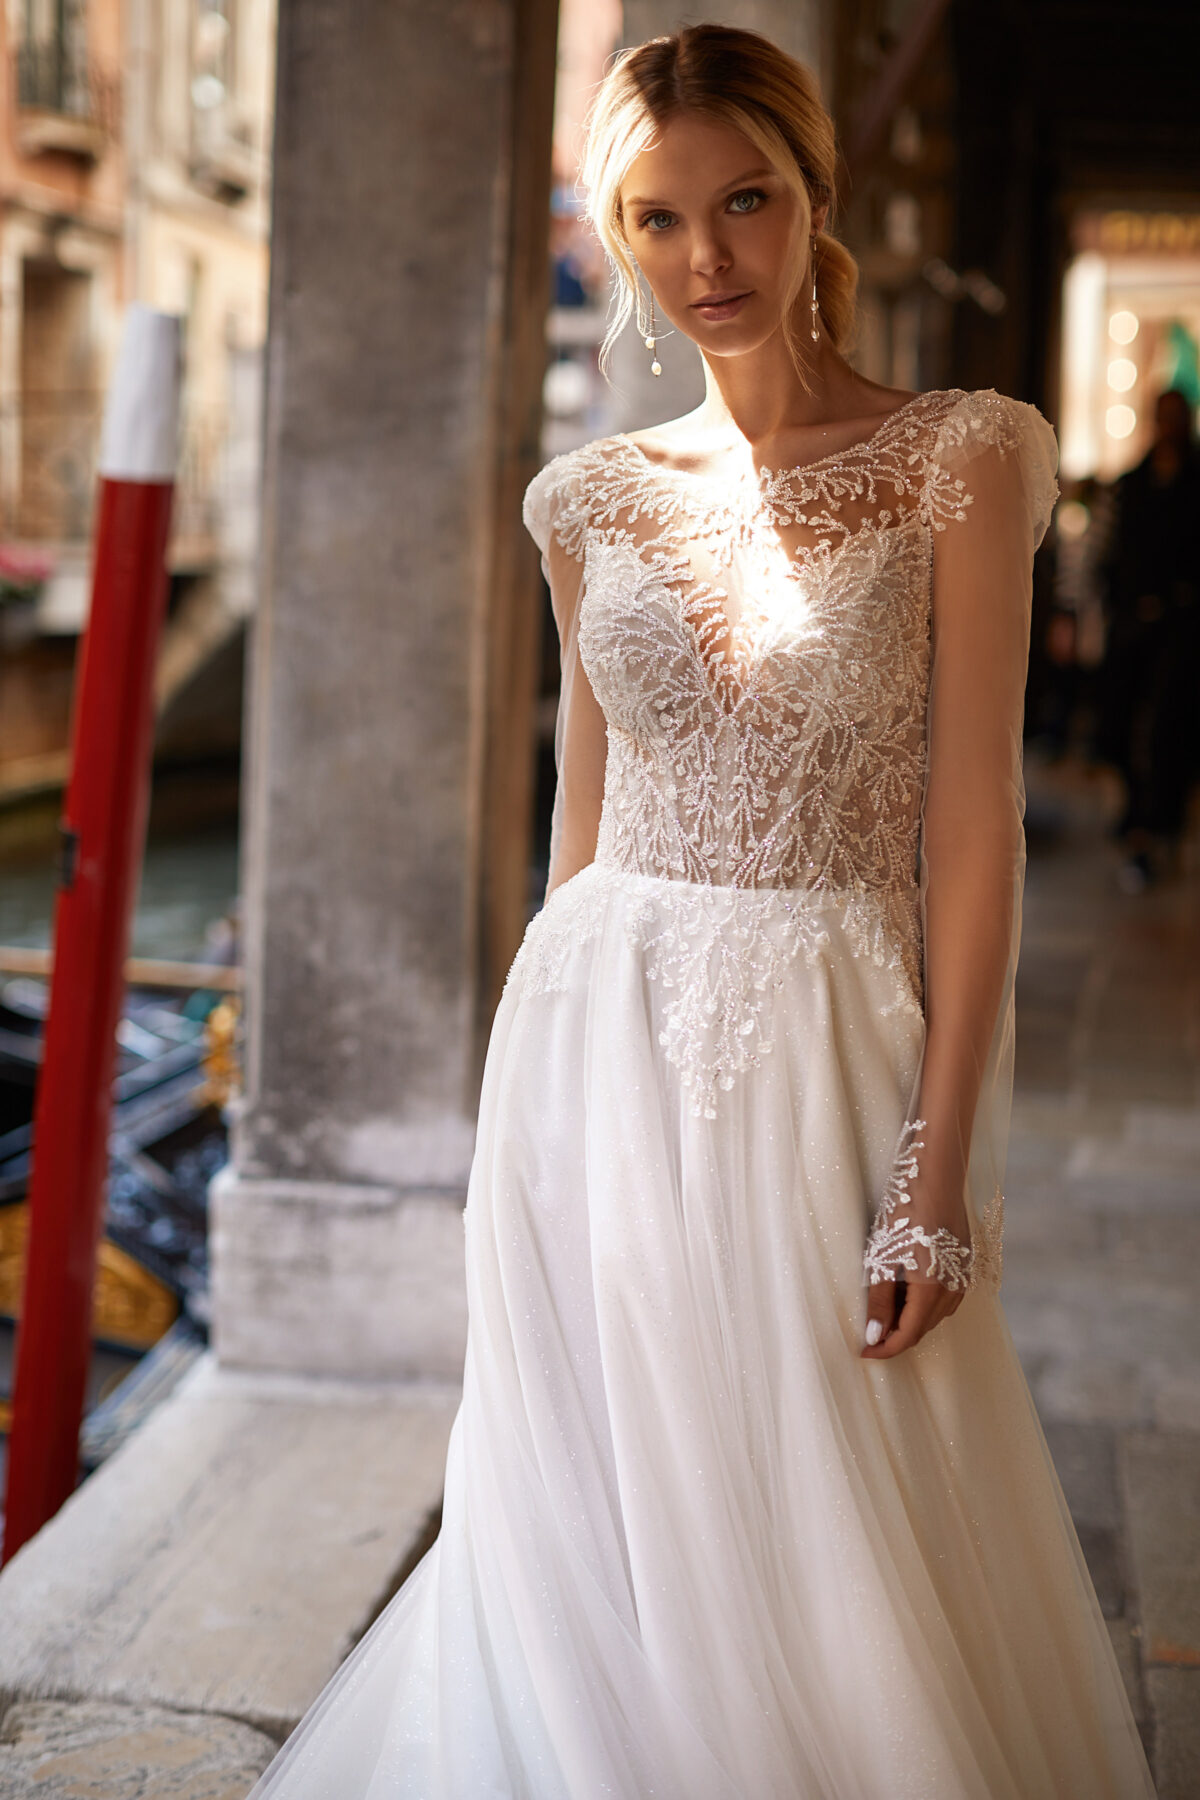 Mary by Katy Corso wedding dress